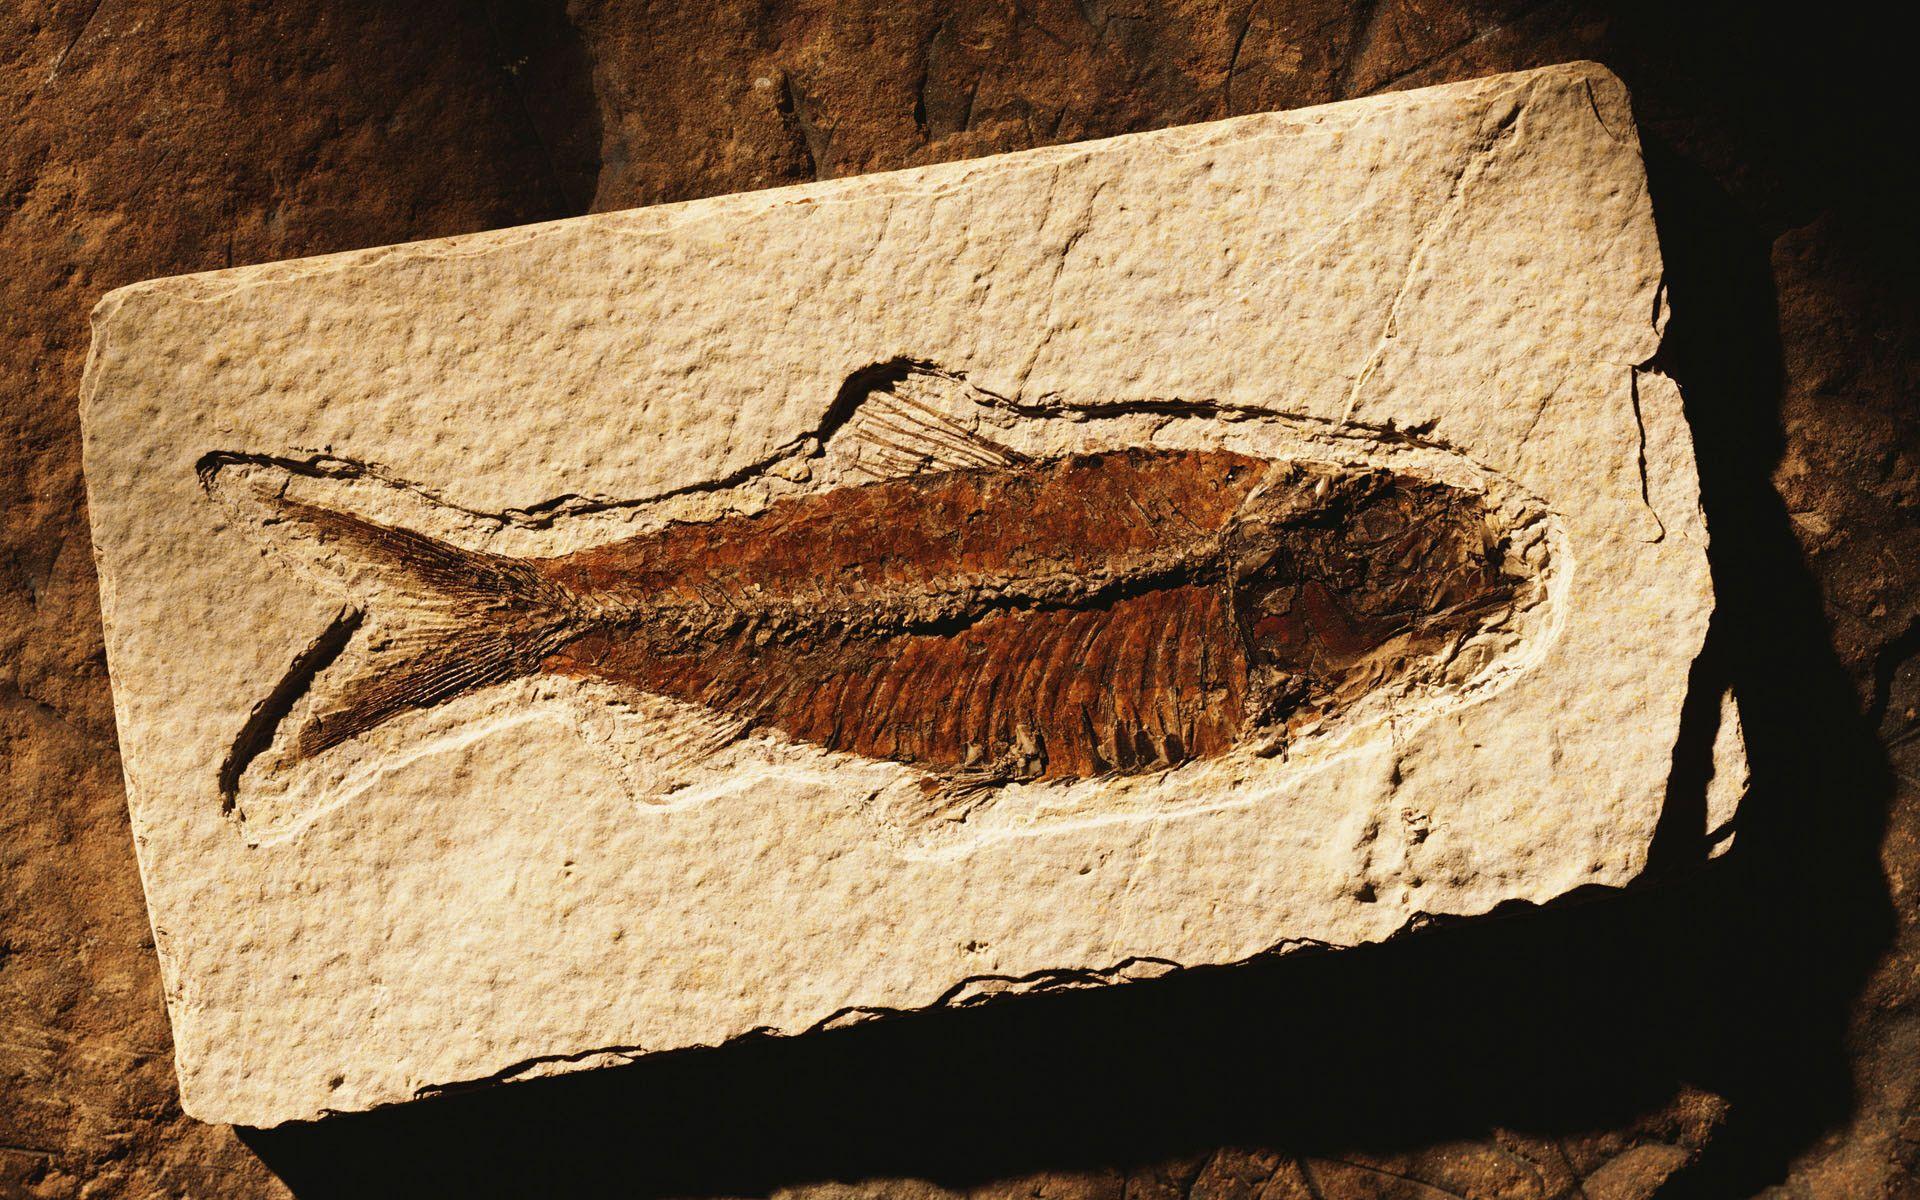 Wallpaper Fossils id:460 1920 x 1200 Image topwallpaper.eu